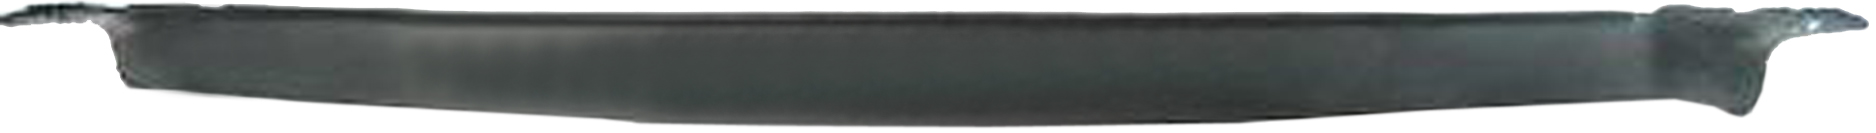 Aftermarket APRON/VALANCE/FILLER PLASTIC for GMC - V1500 SUBURBAN, V1500 SUBURBAN,87-91,Front bumper deflector